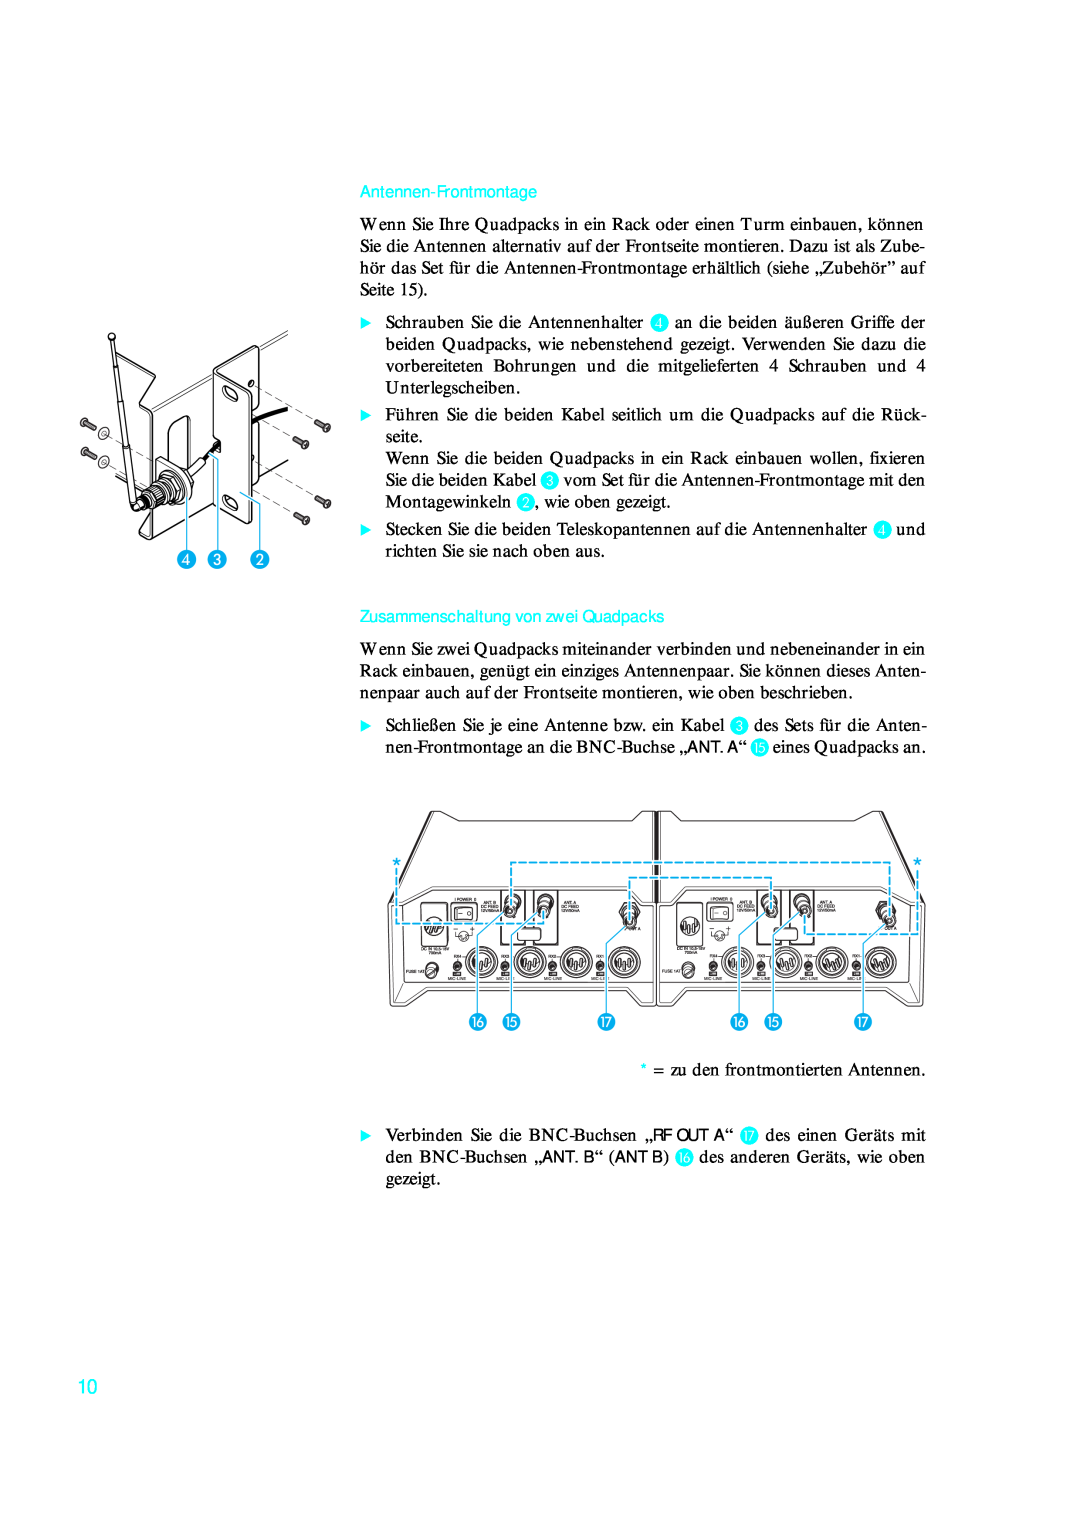 Sennheiser qp 3041 instruction manual D C B, Antennen-Frontmontage, Zusammenschaltung von zwei Quadpacks, P O Q P O Q 